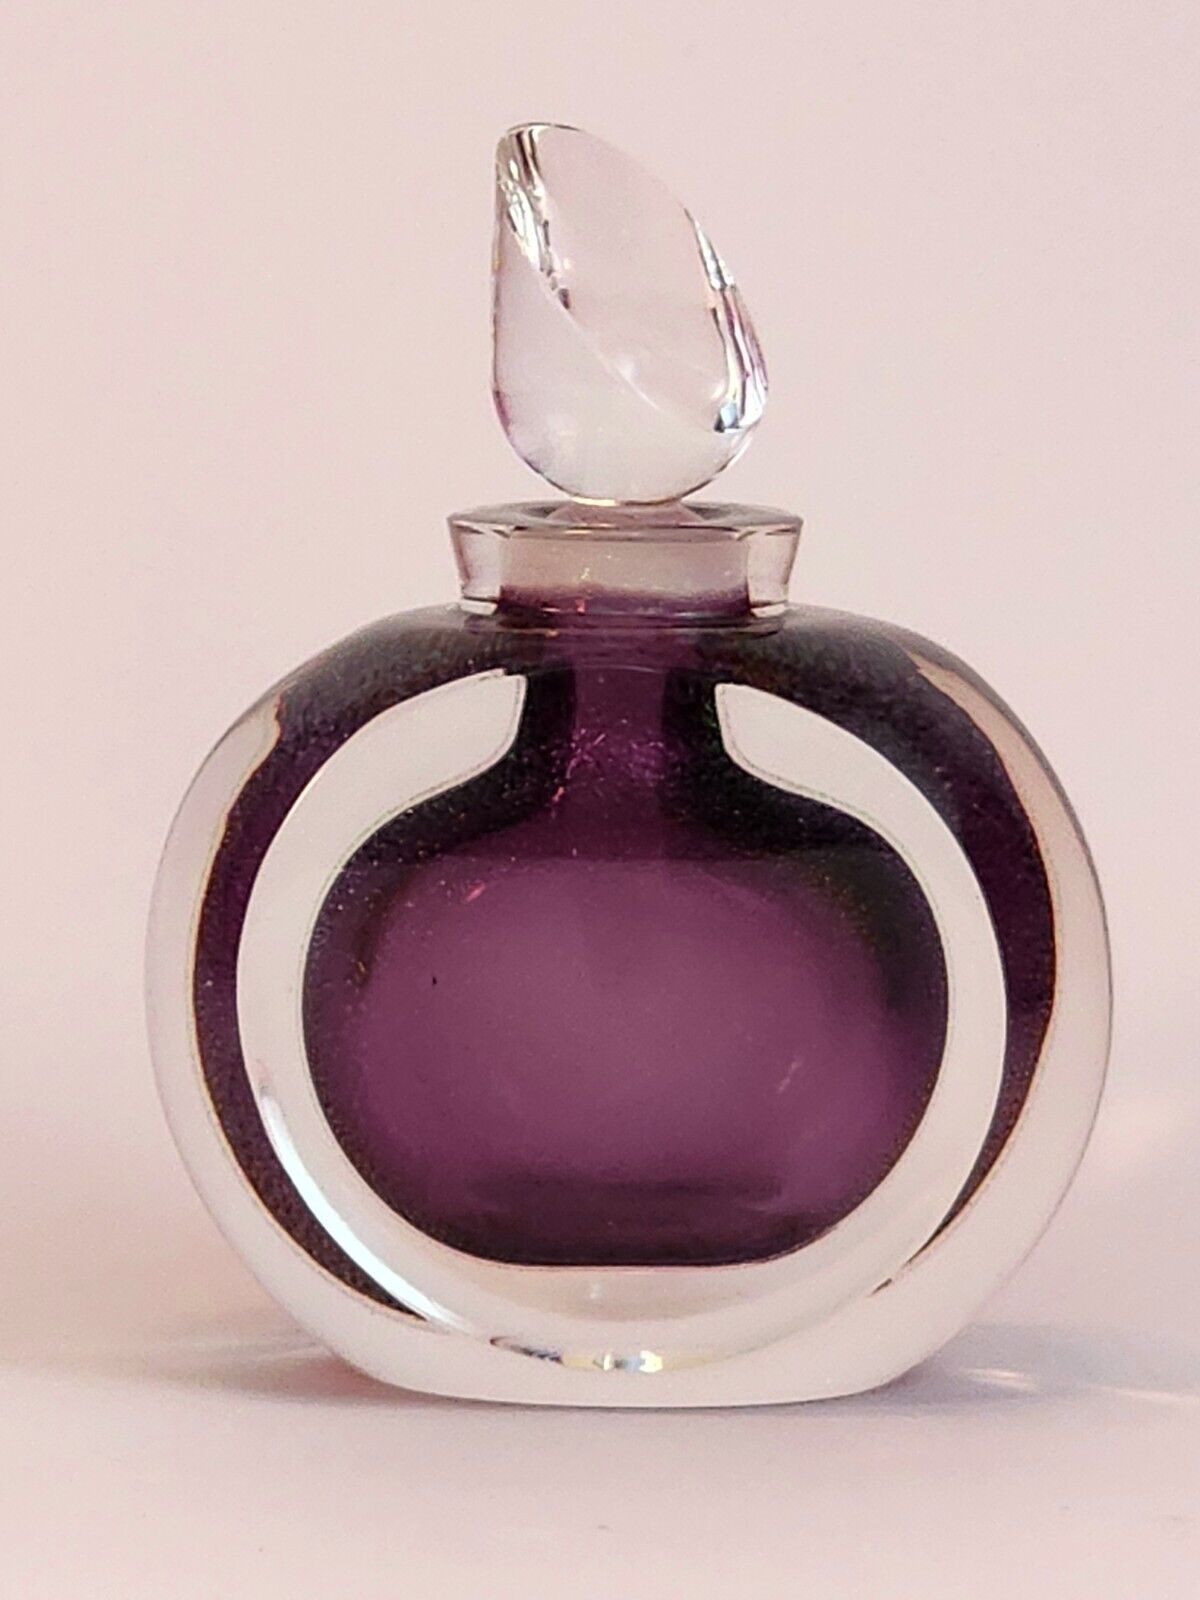 Stunning Vintage Steve Correia perfume bottle- limited ed